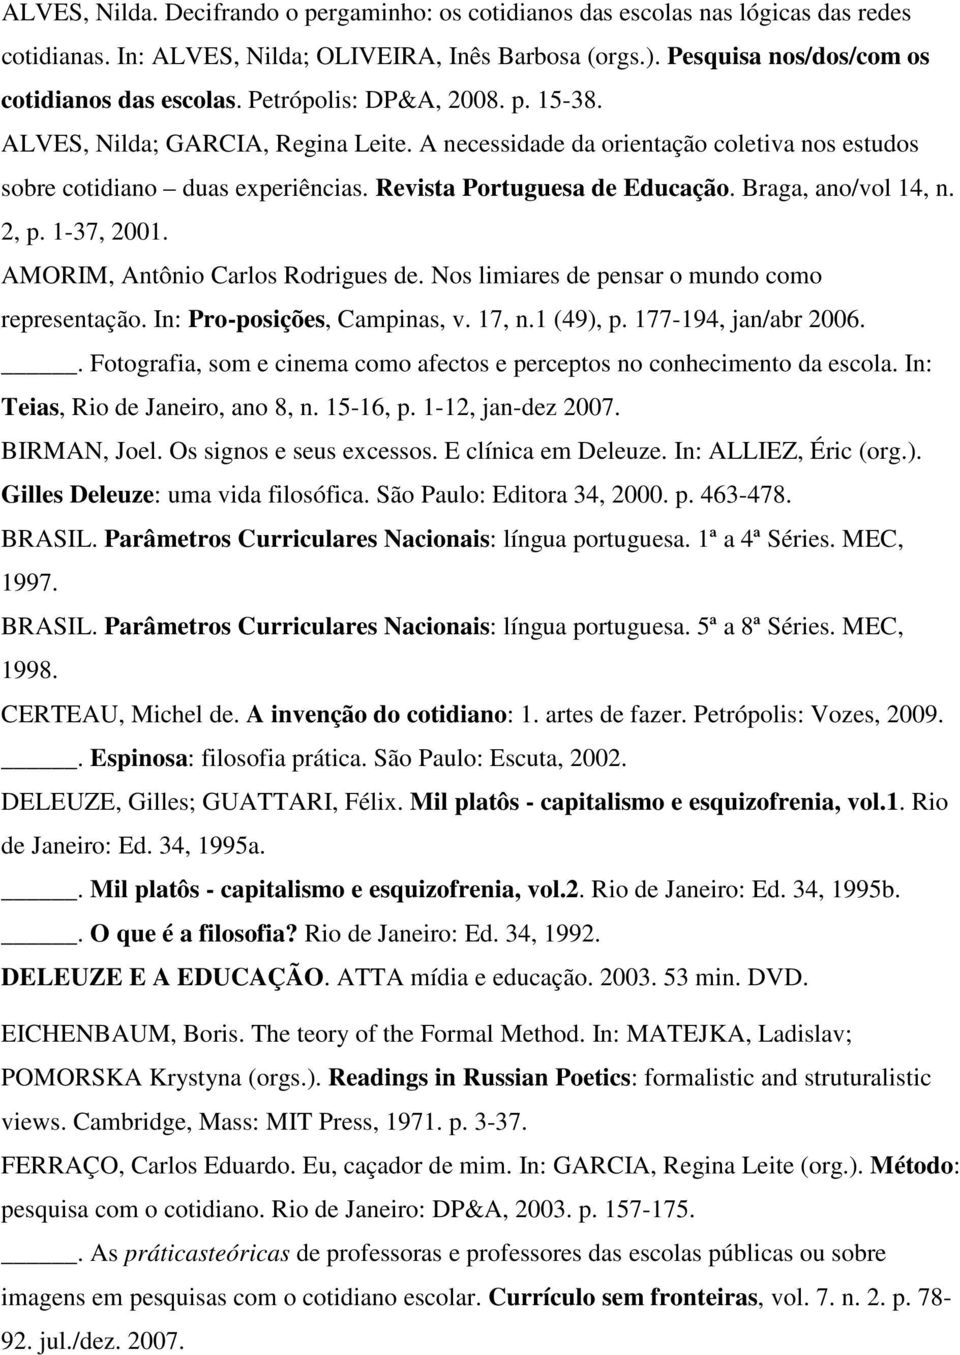 Braga, ano/vol 14, n. 2, p. 1-37, 2001. AMORIM, Antônio Carlos Rodrigues de. Nos limiares de pensar o mundo como representação. In: Pro-posições, Campinas, v. 17, n.1 (49), p. 177-194, jan/abr 2006.